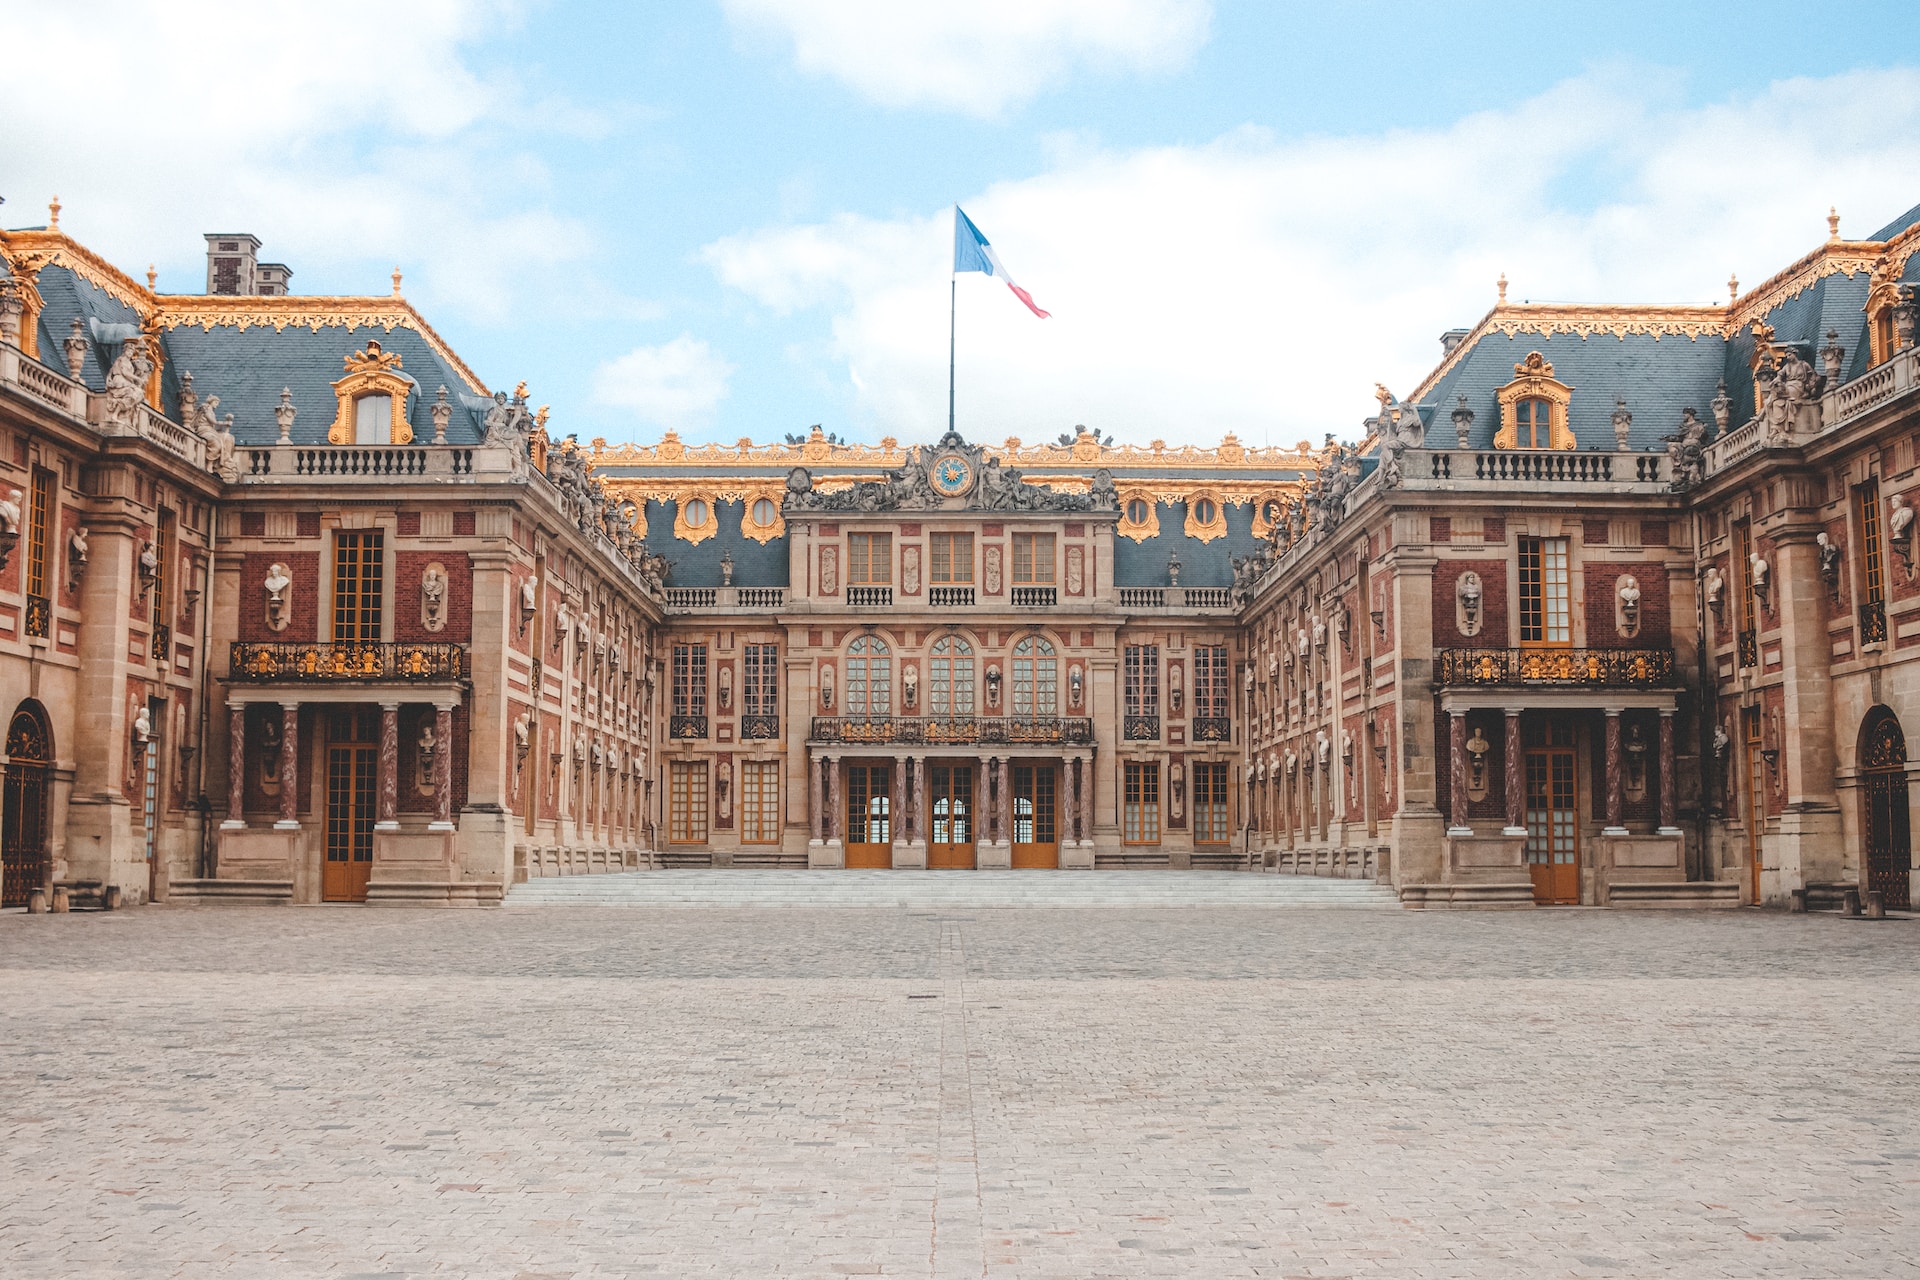 Evacuan de nuevo el Palacio de Versalles y al menos 8 aeropuertos por amenaza de bomba